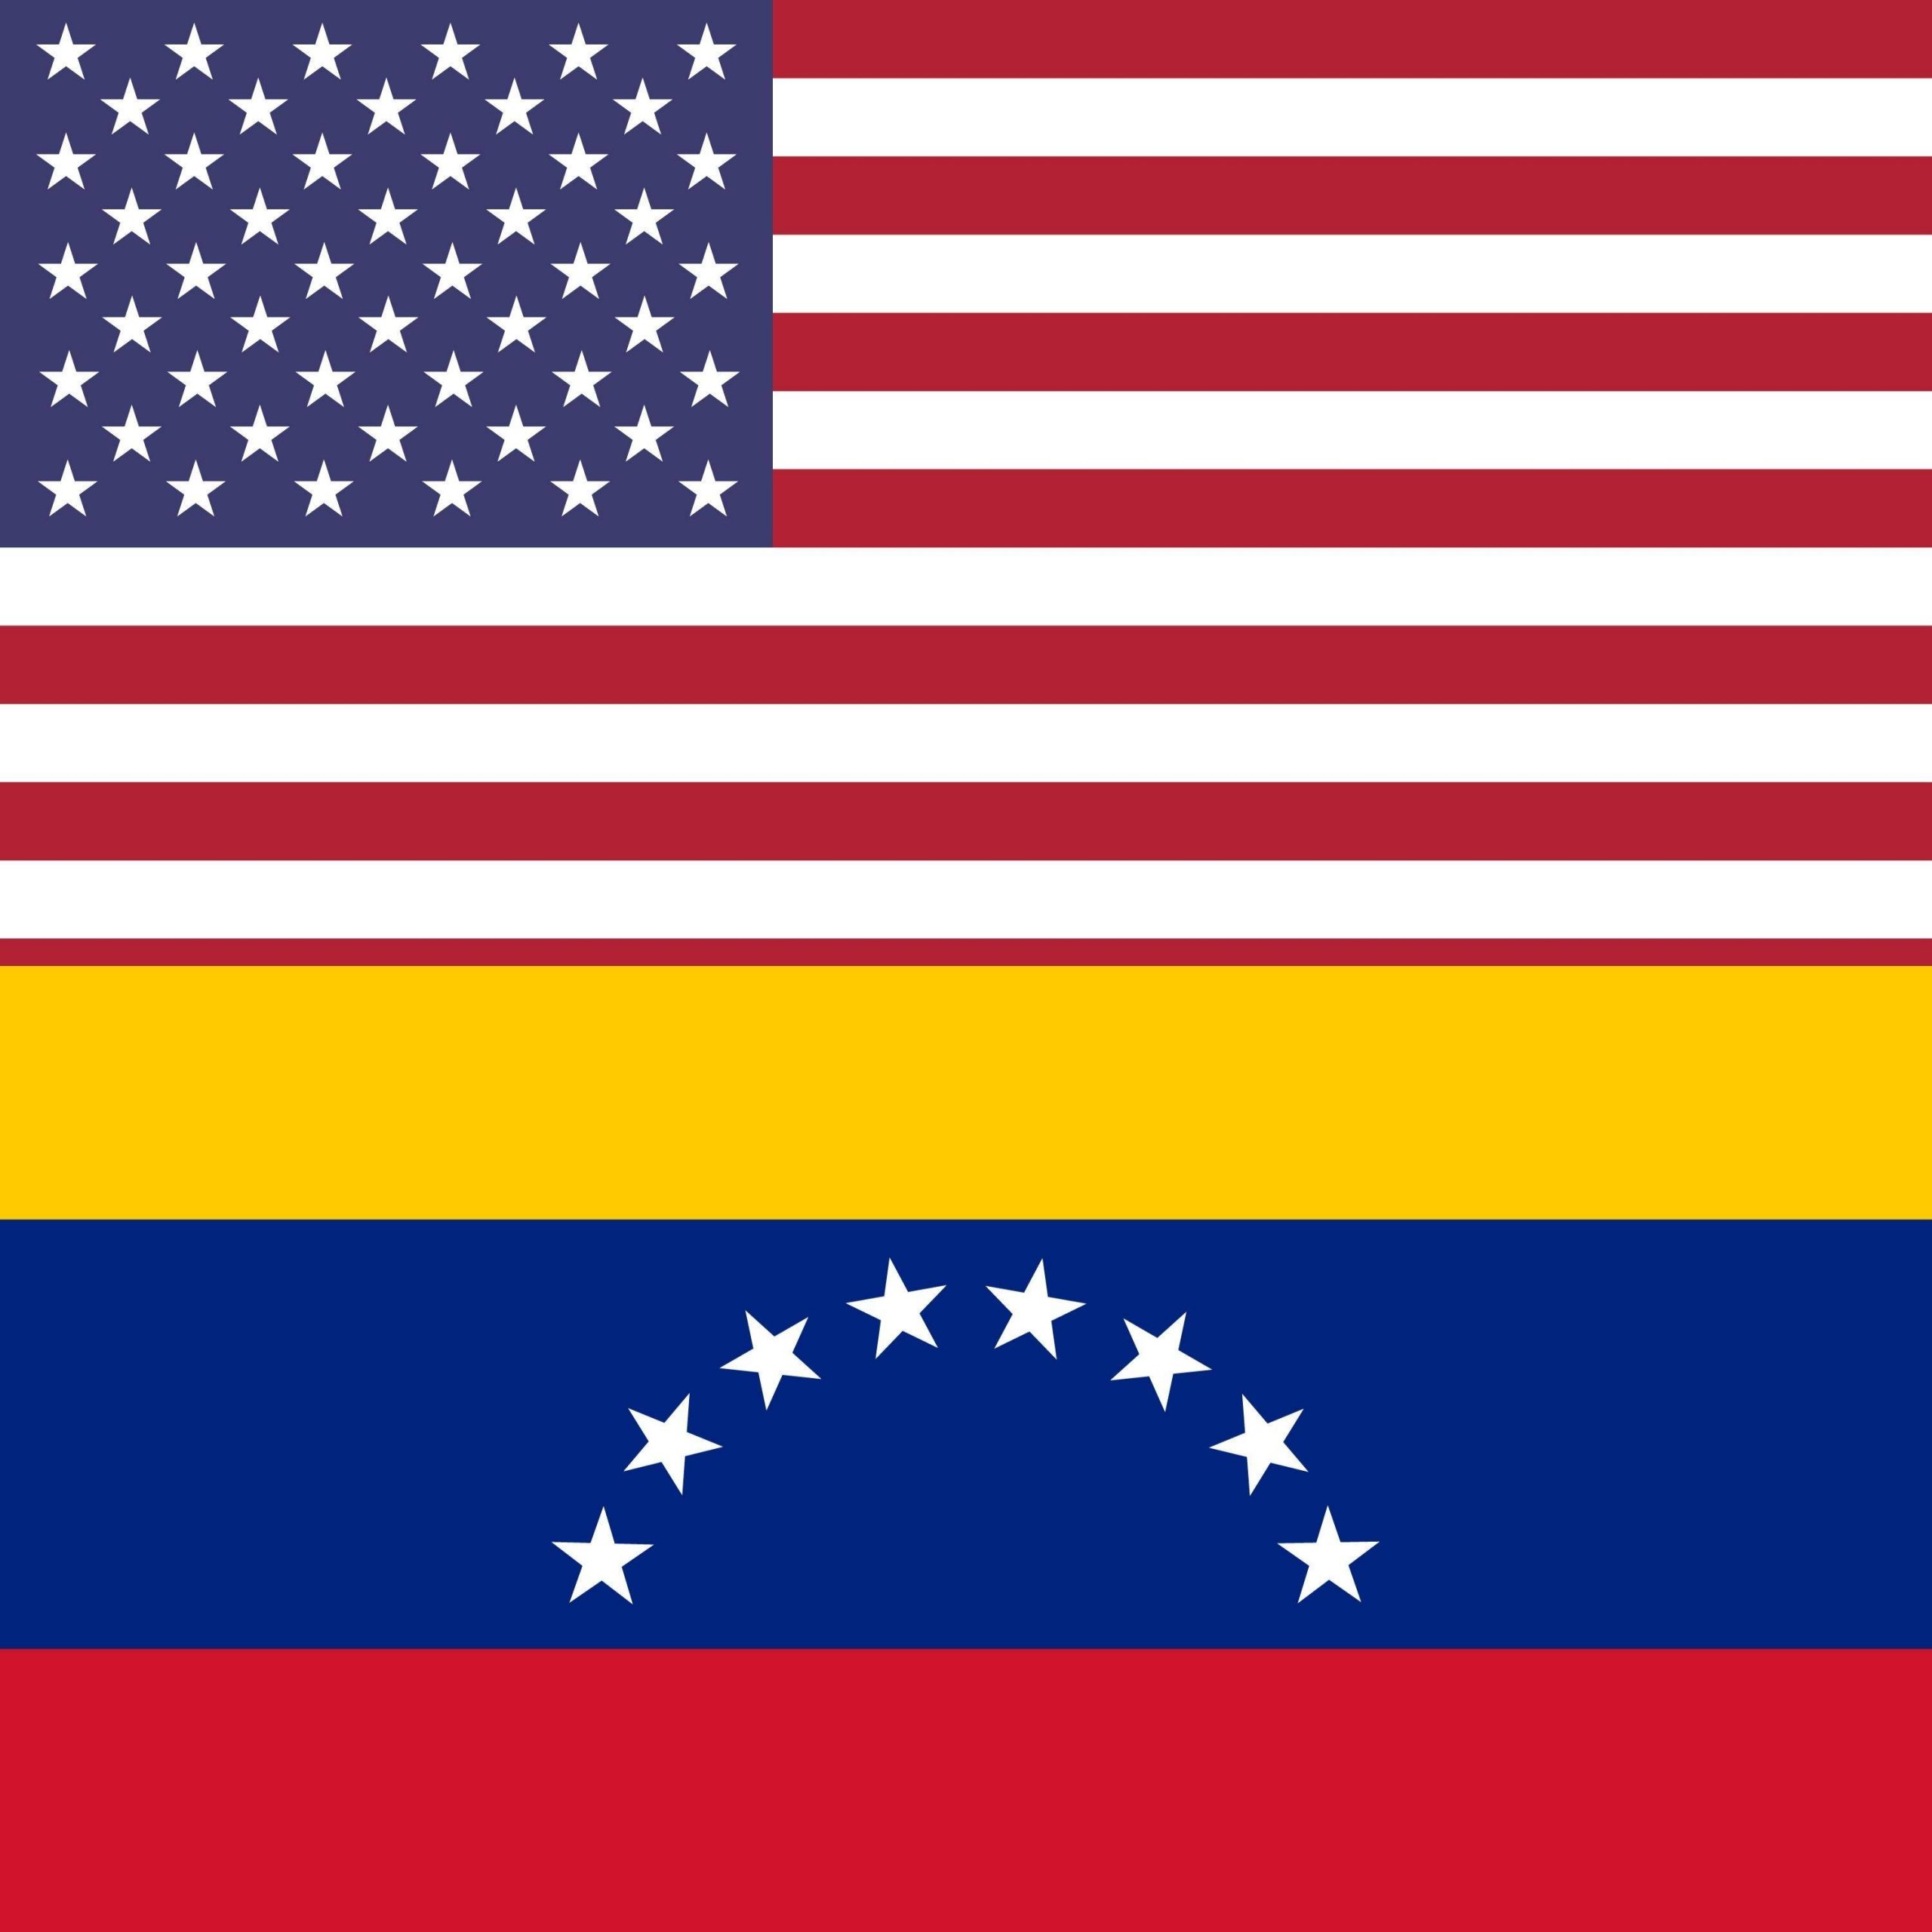 United States vs Venezuela